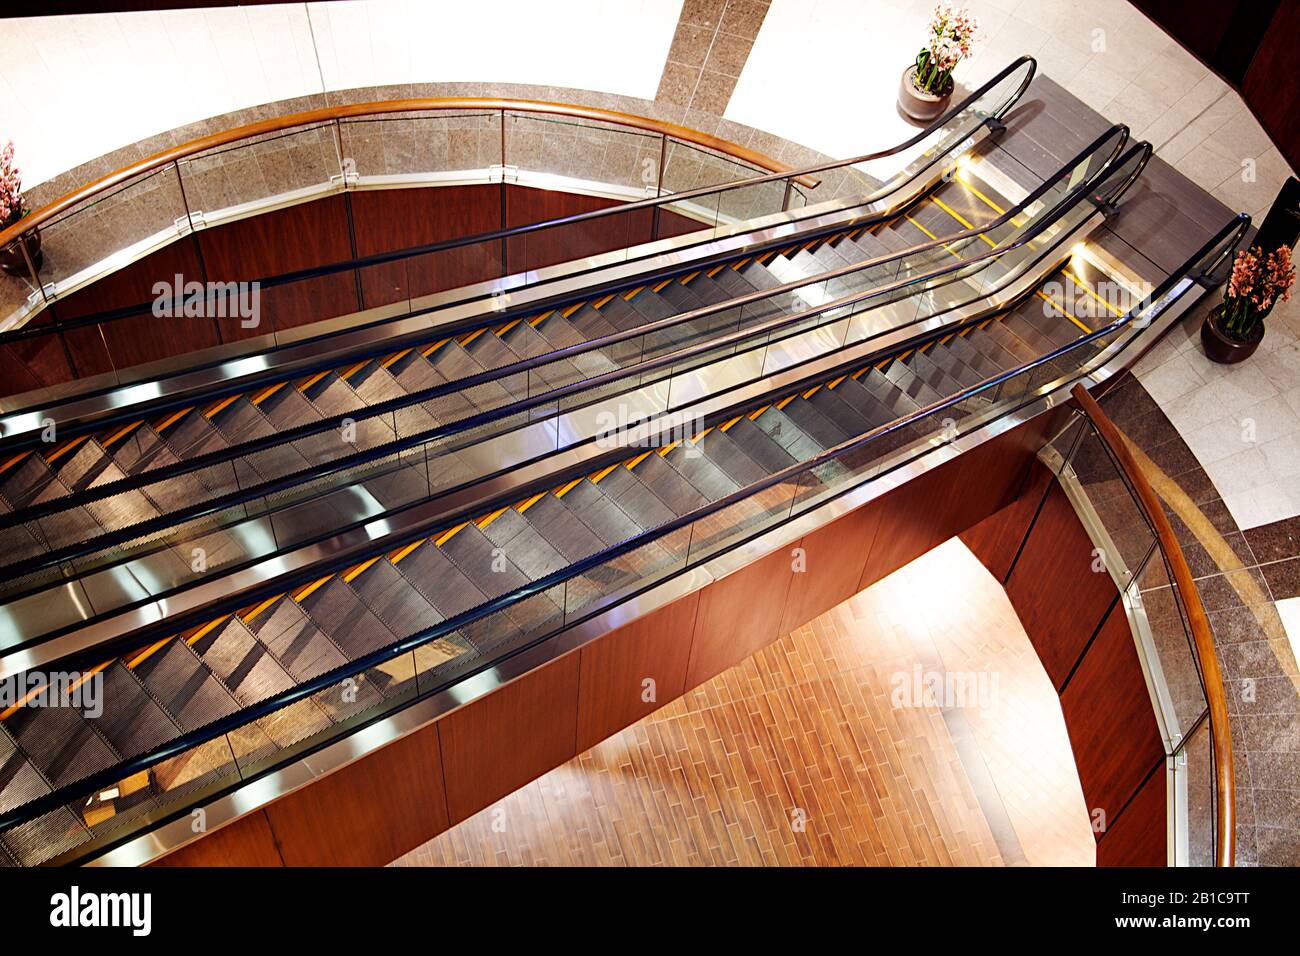 Dubai-Escalators in side Dubai Mall 4 Stock Photo